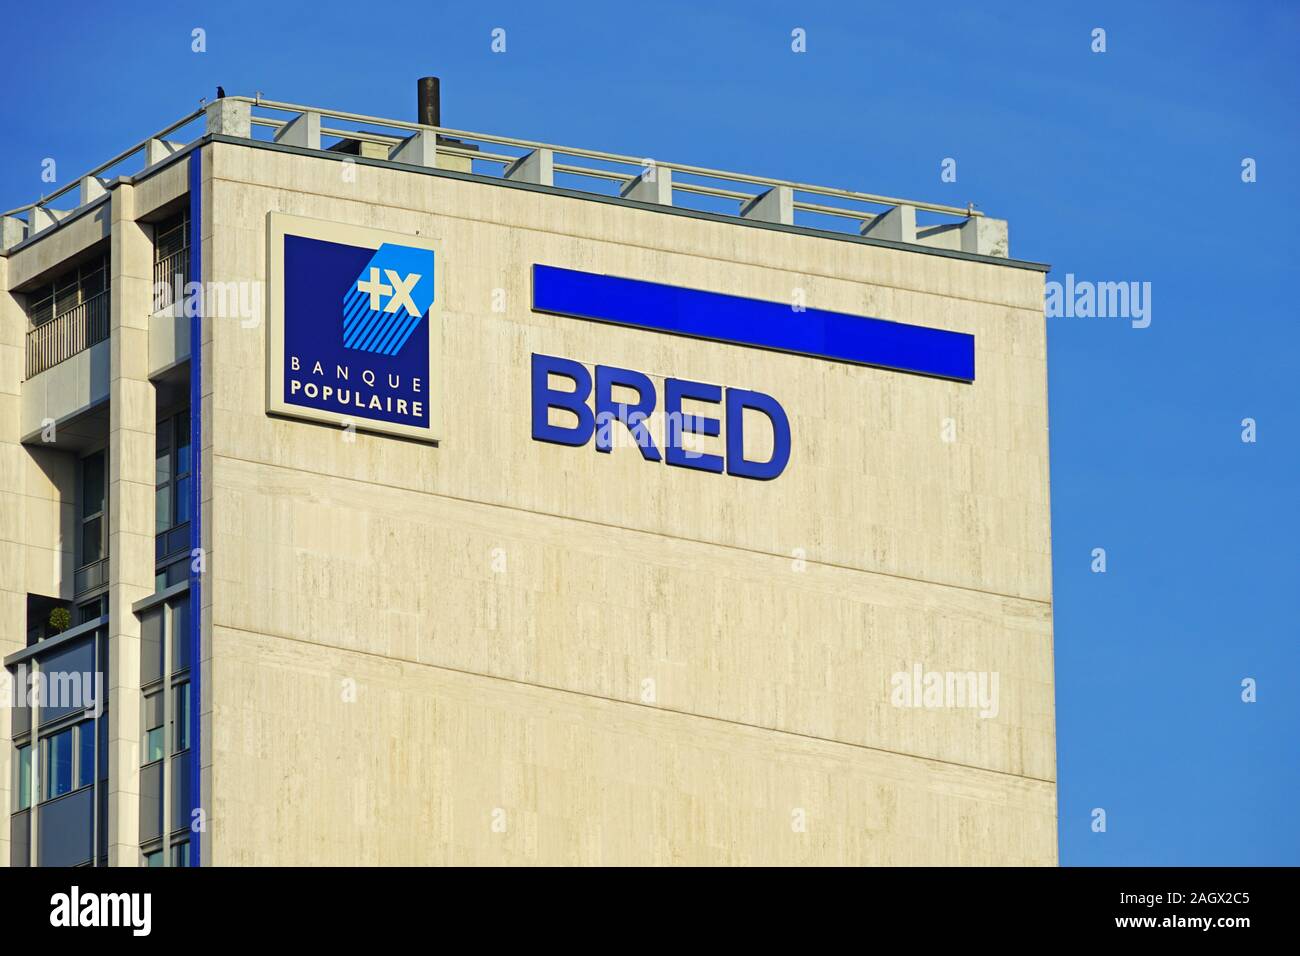 PARIS, FRANCE -18 DEC 2019- View of the BRED Banque Populaire building on Quai de la Rapee in Paris, France. Stock Photo